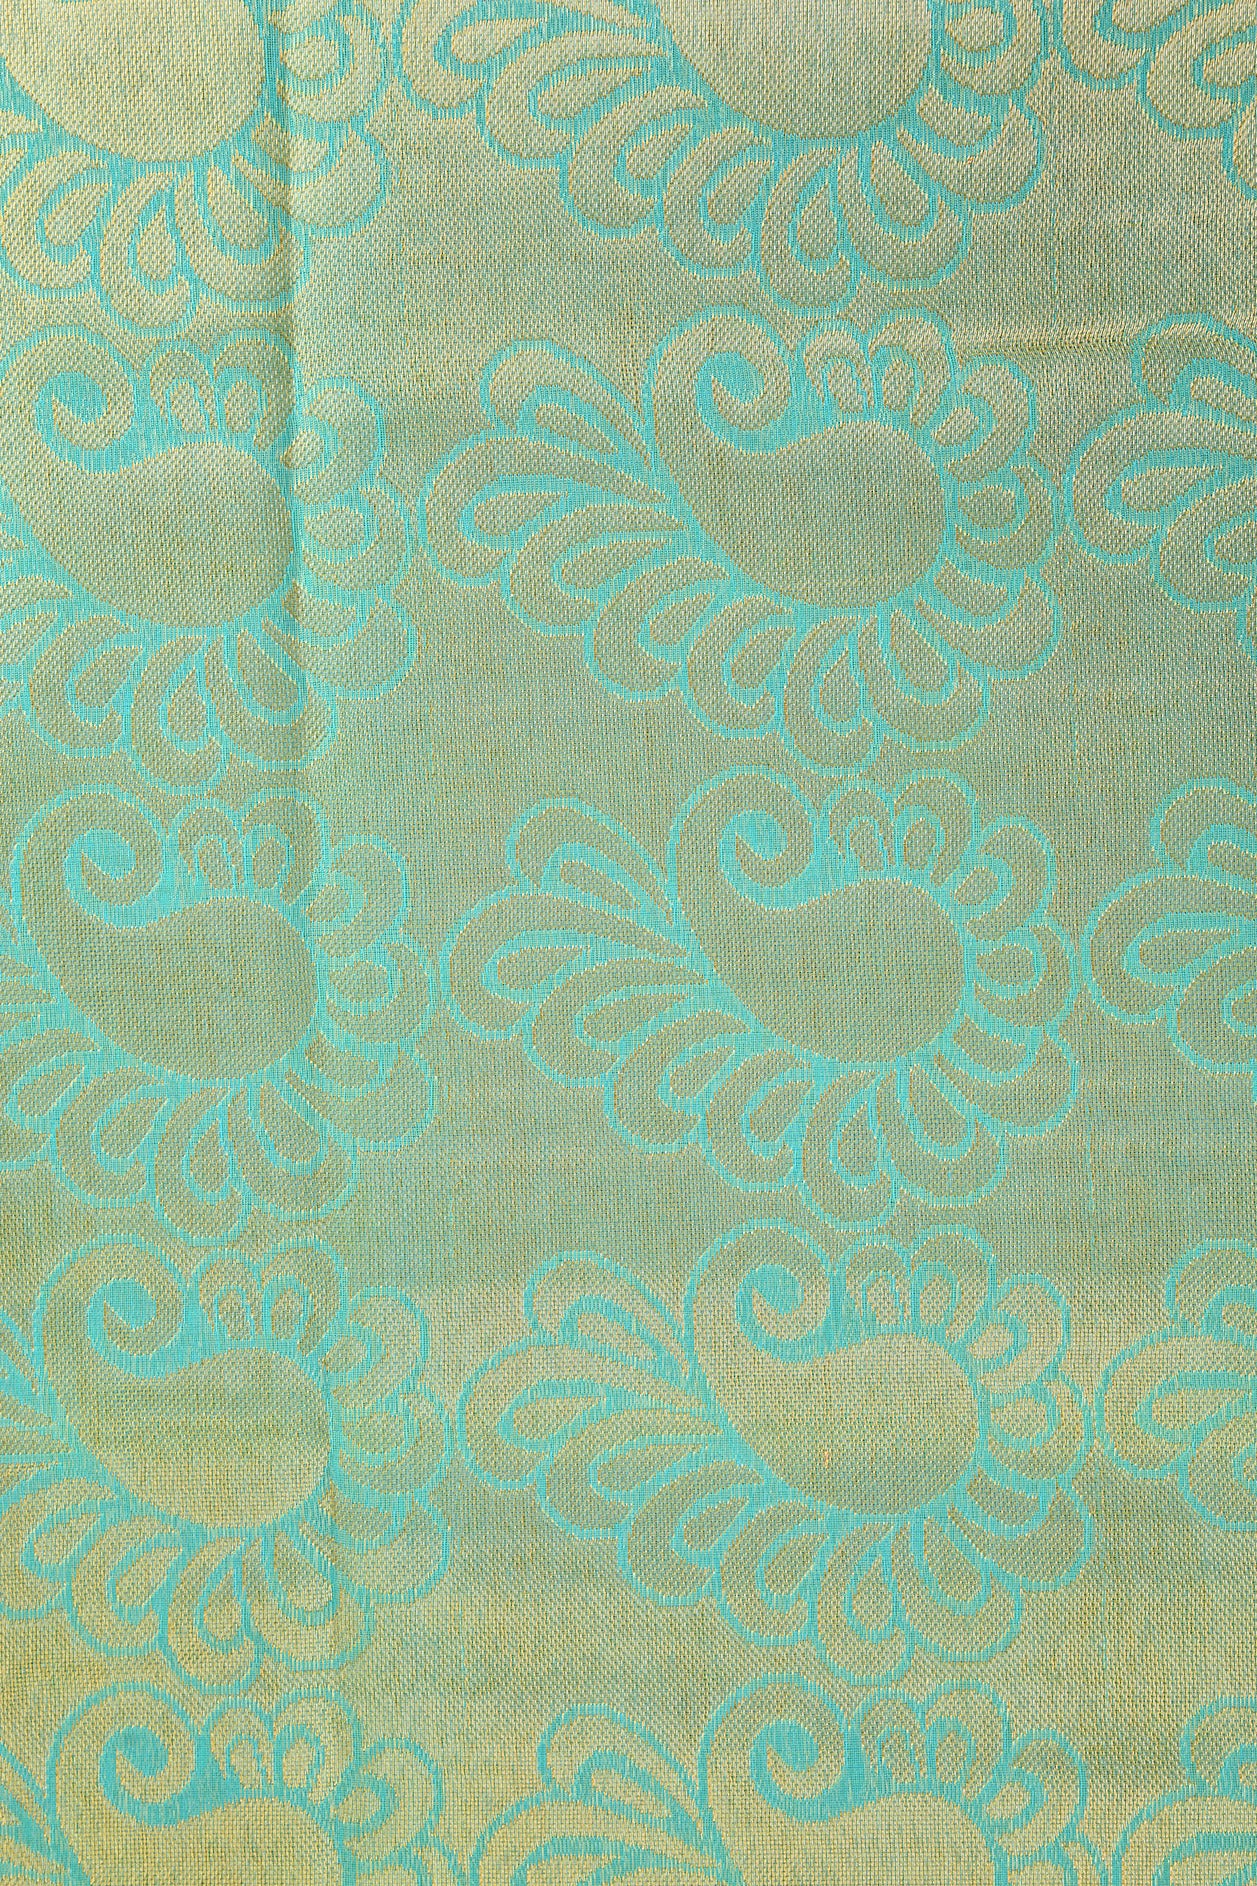 Peacock Border Design Light Teal Blue Kora Silk Cotton Saree